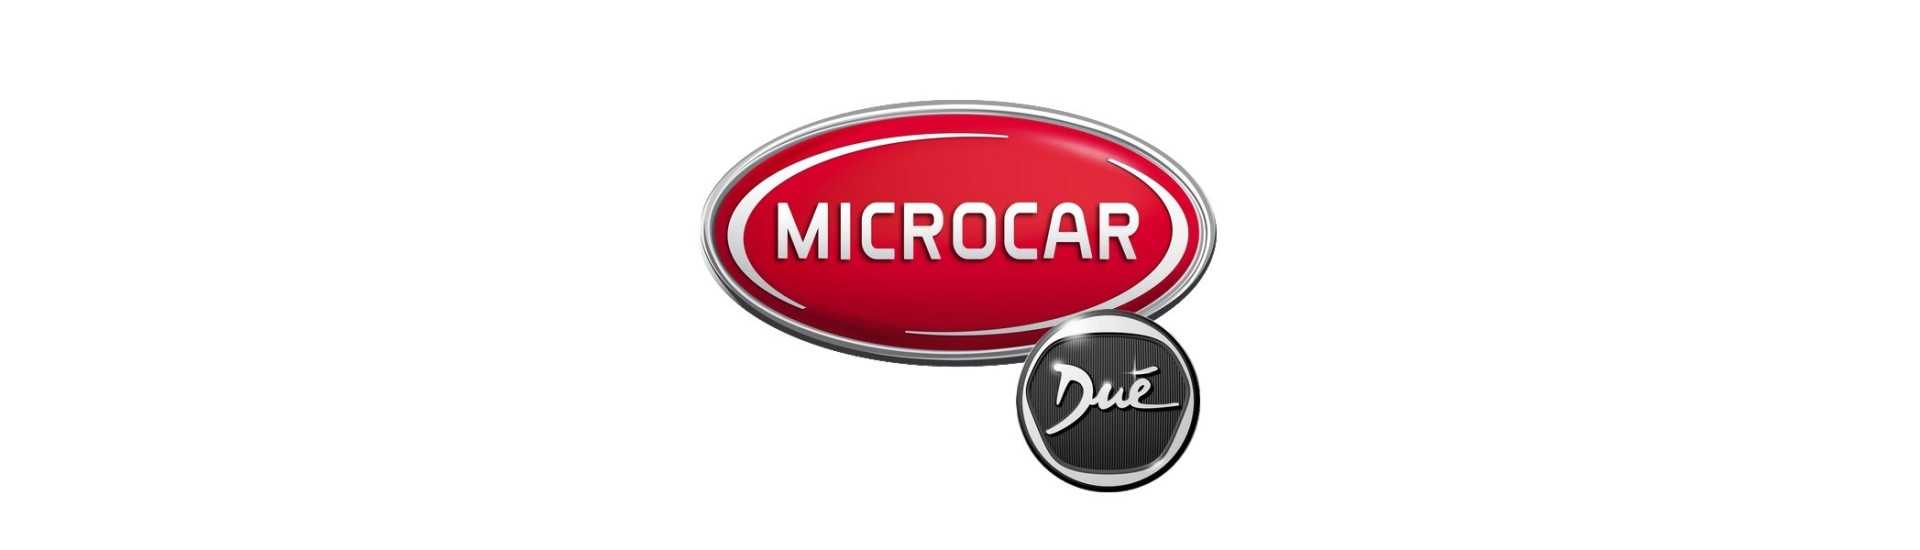 Cel mai bun preț auto fără permis Microcar Dué